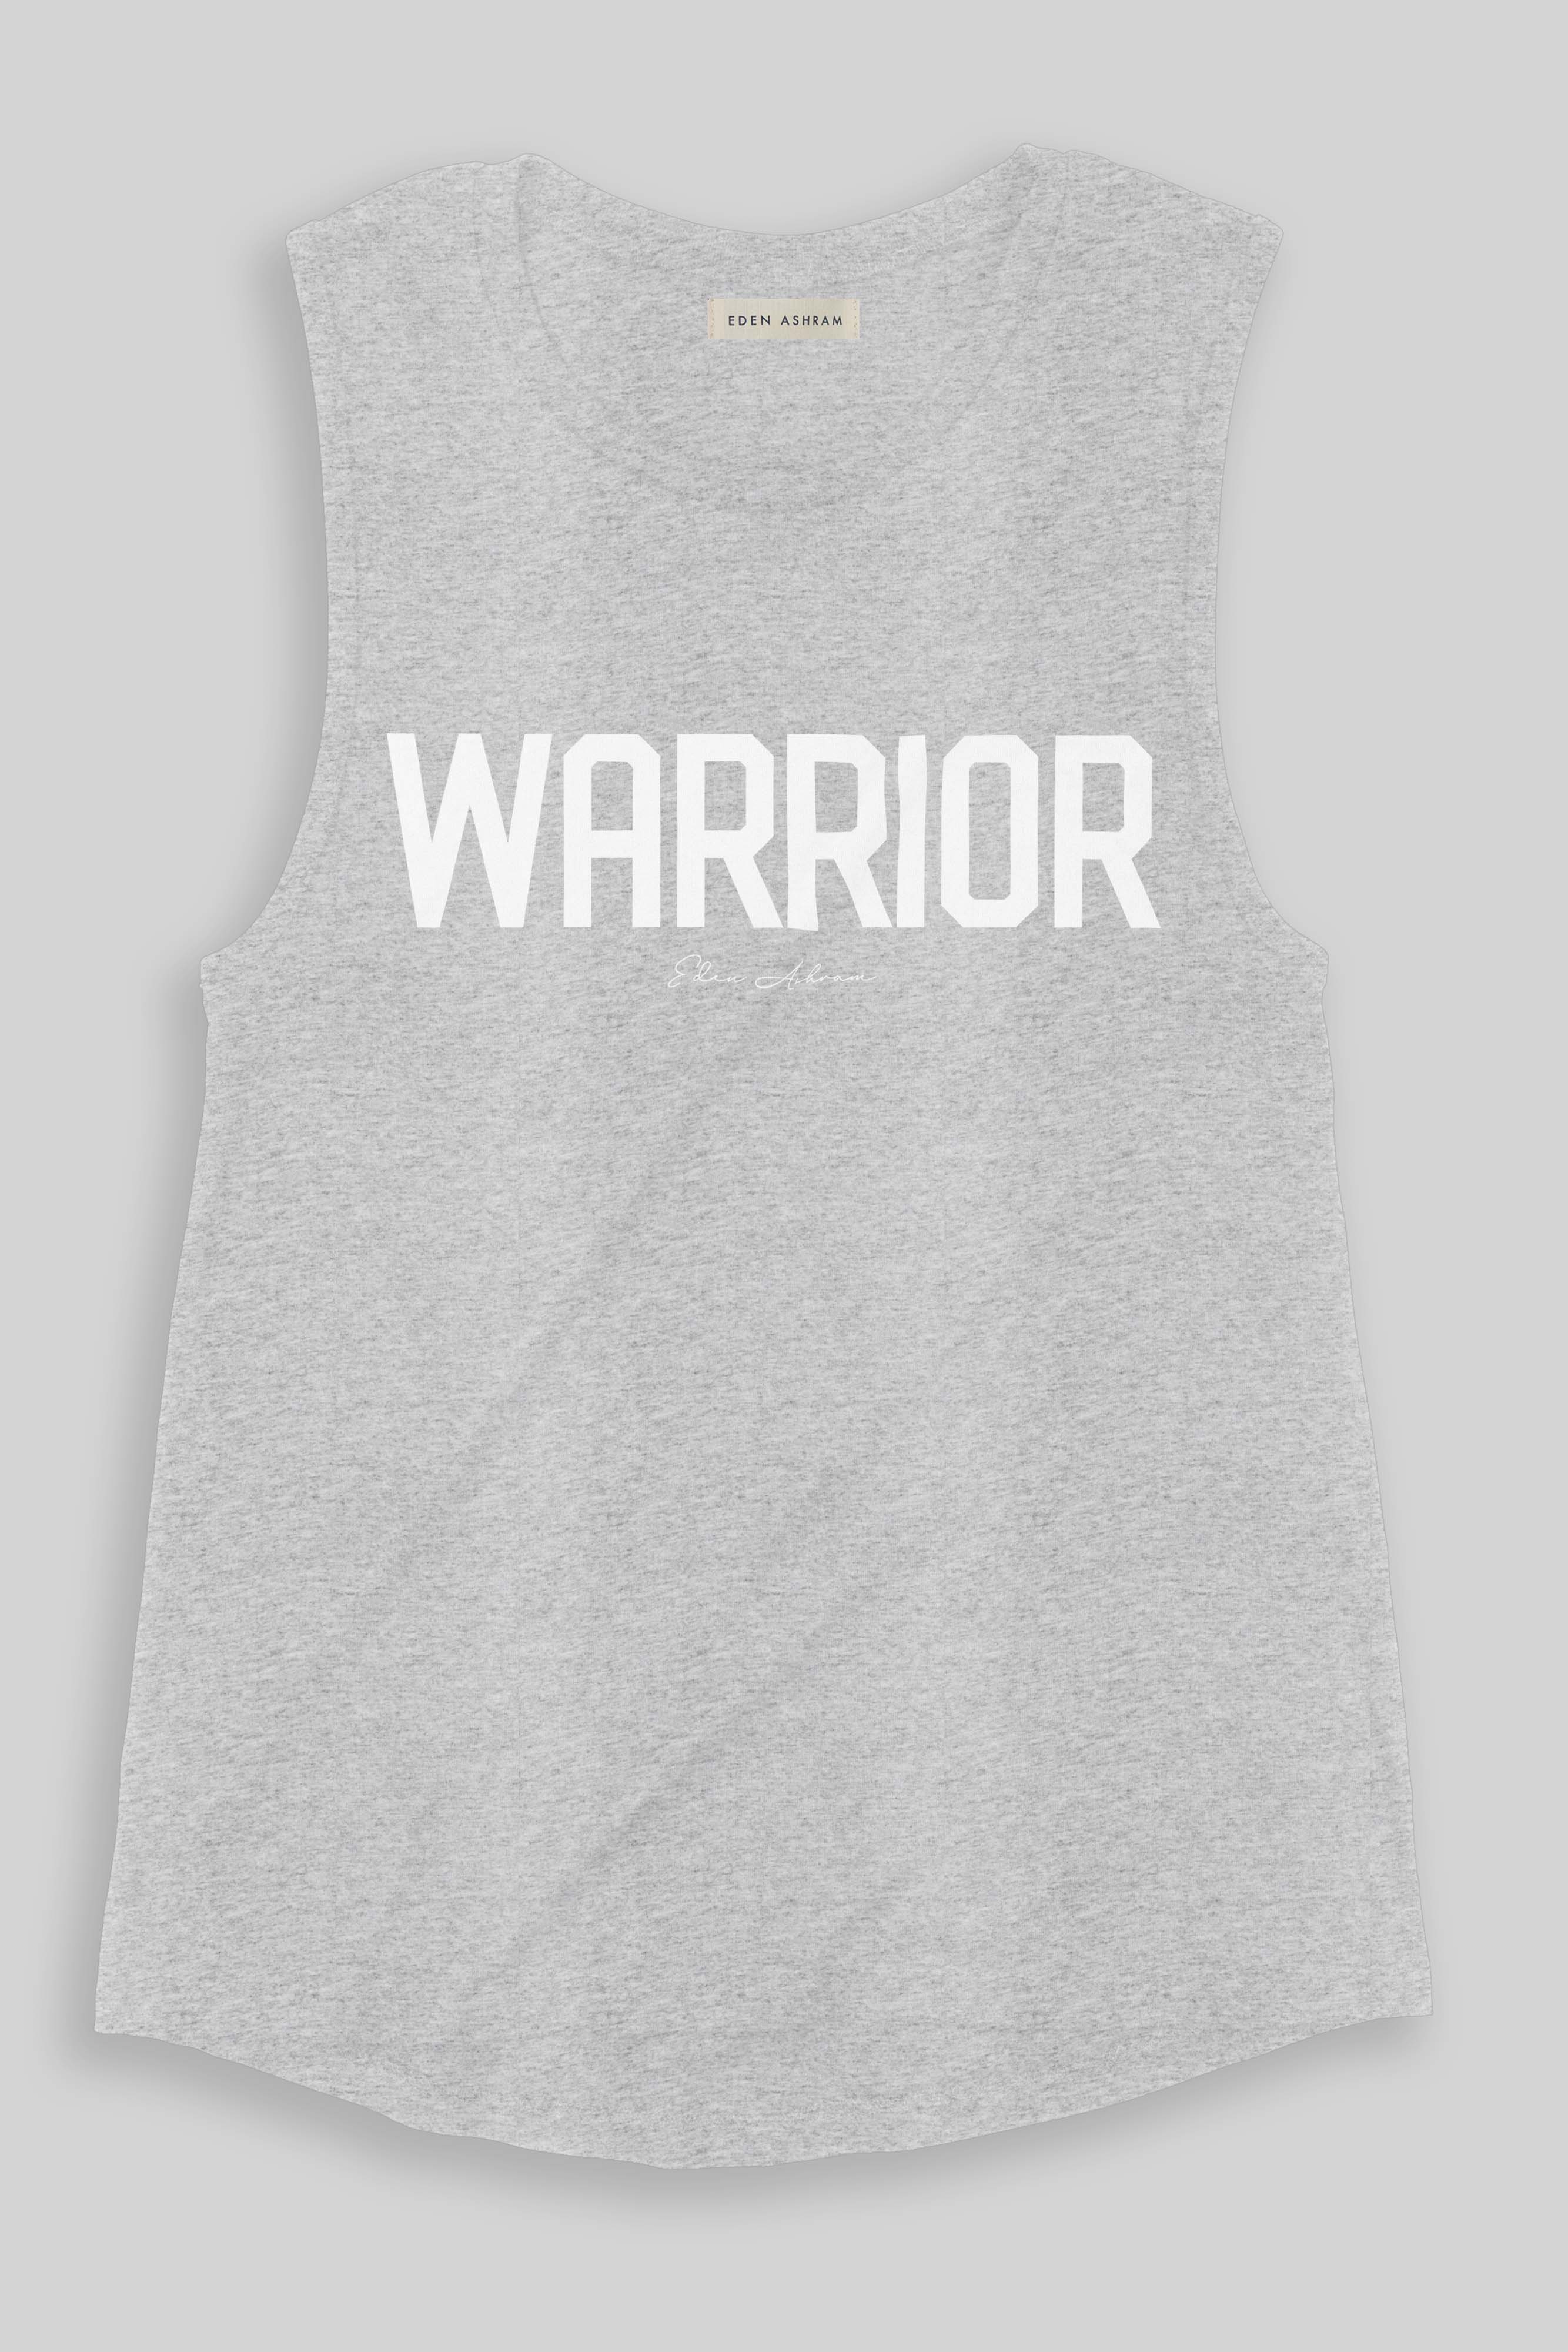 EDEN ASHRAM Warrior Premium Jersey Muscle Tank Heather Grey